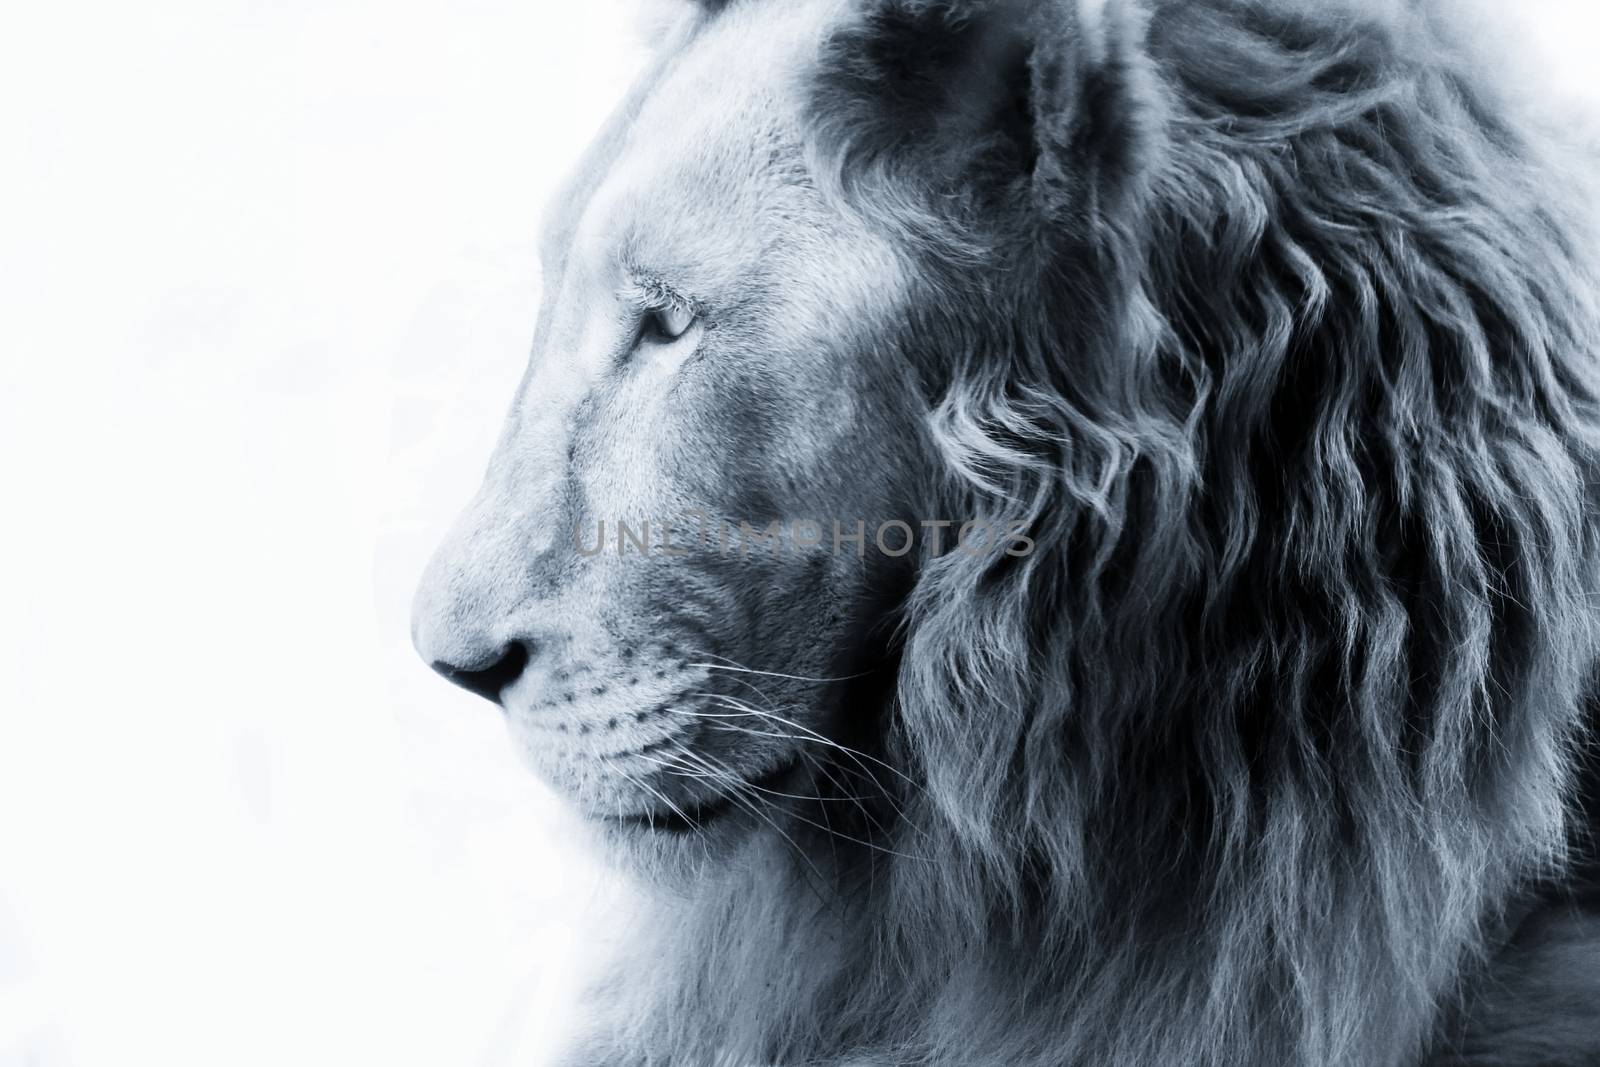 Portrait of a lion close-up